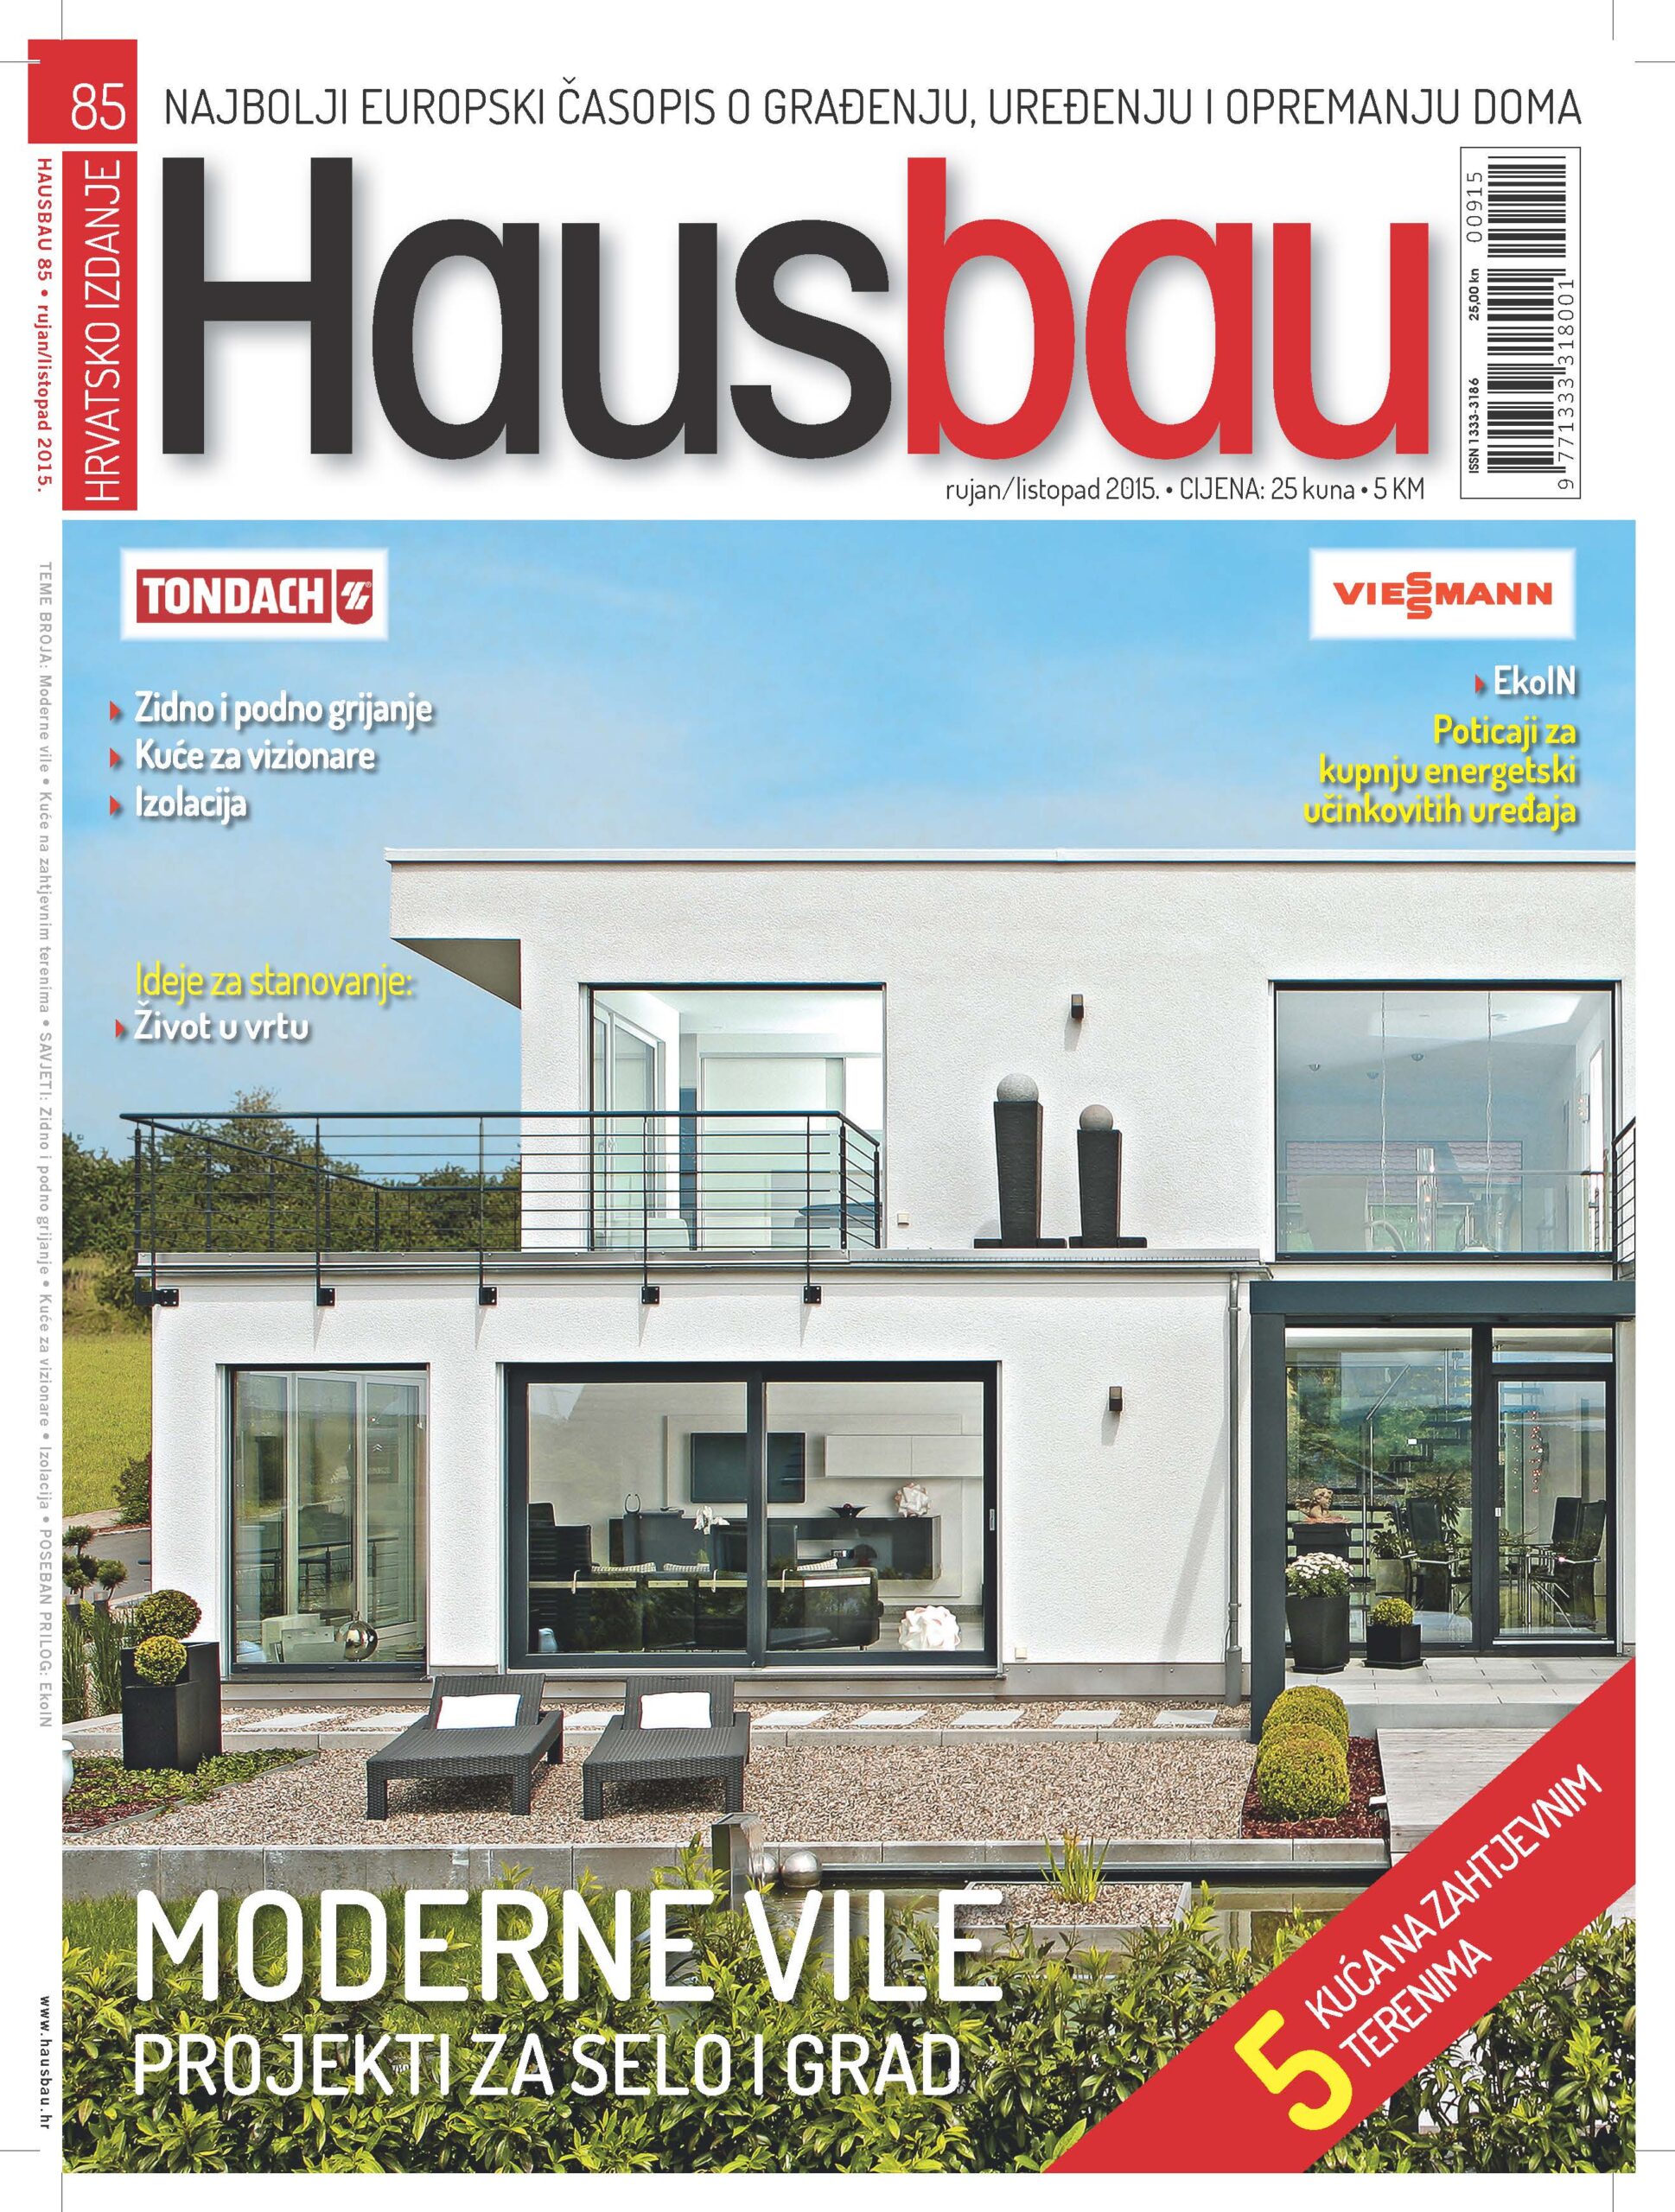 Hausbau – trendovima gradnje koji nas očekuju u budućnosti Kuće za vizionare-revolucija gradnje započinje sada!